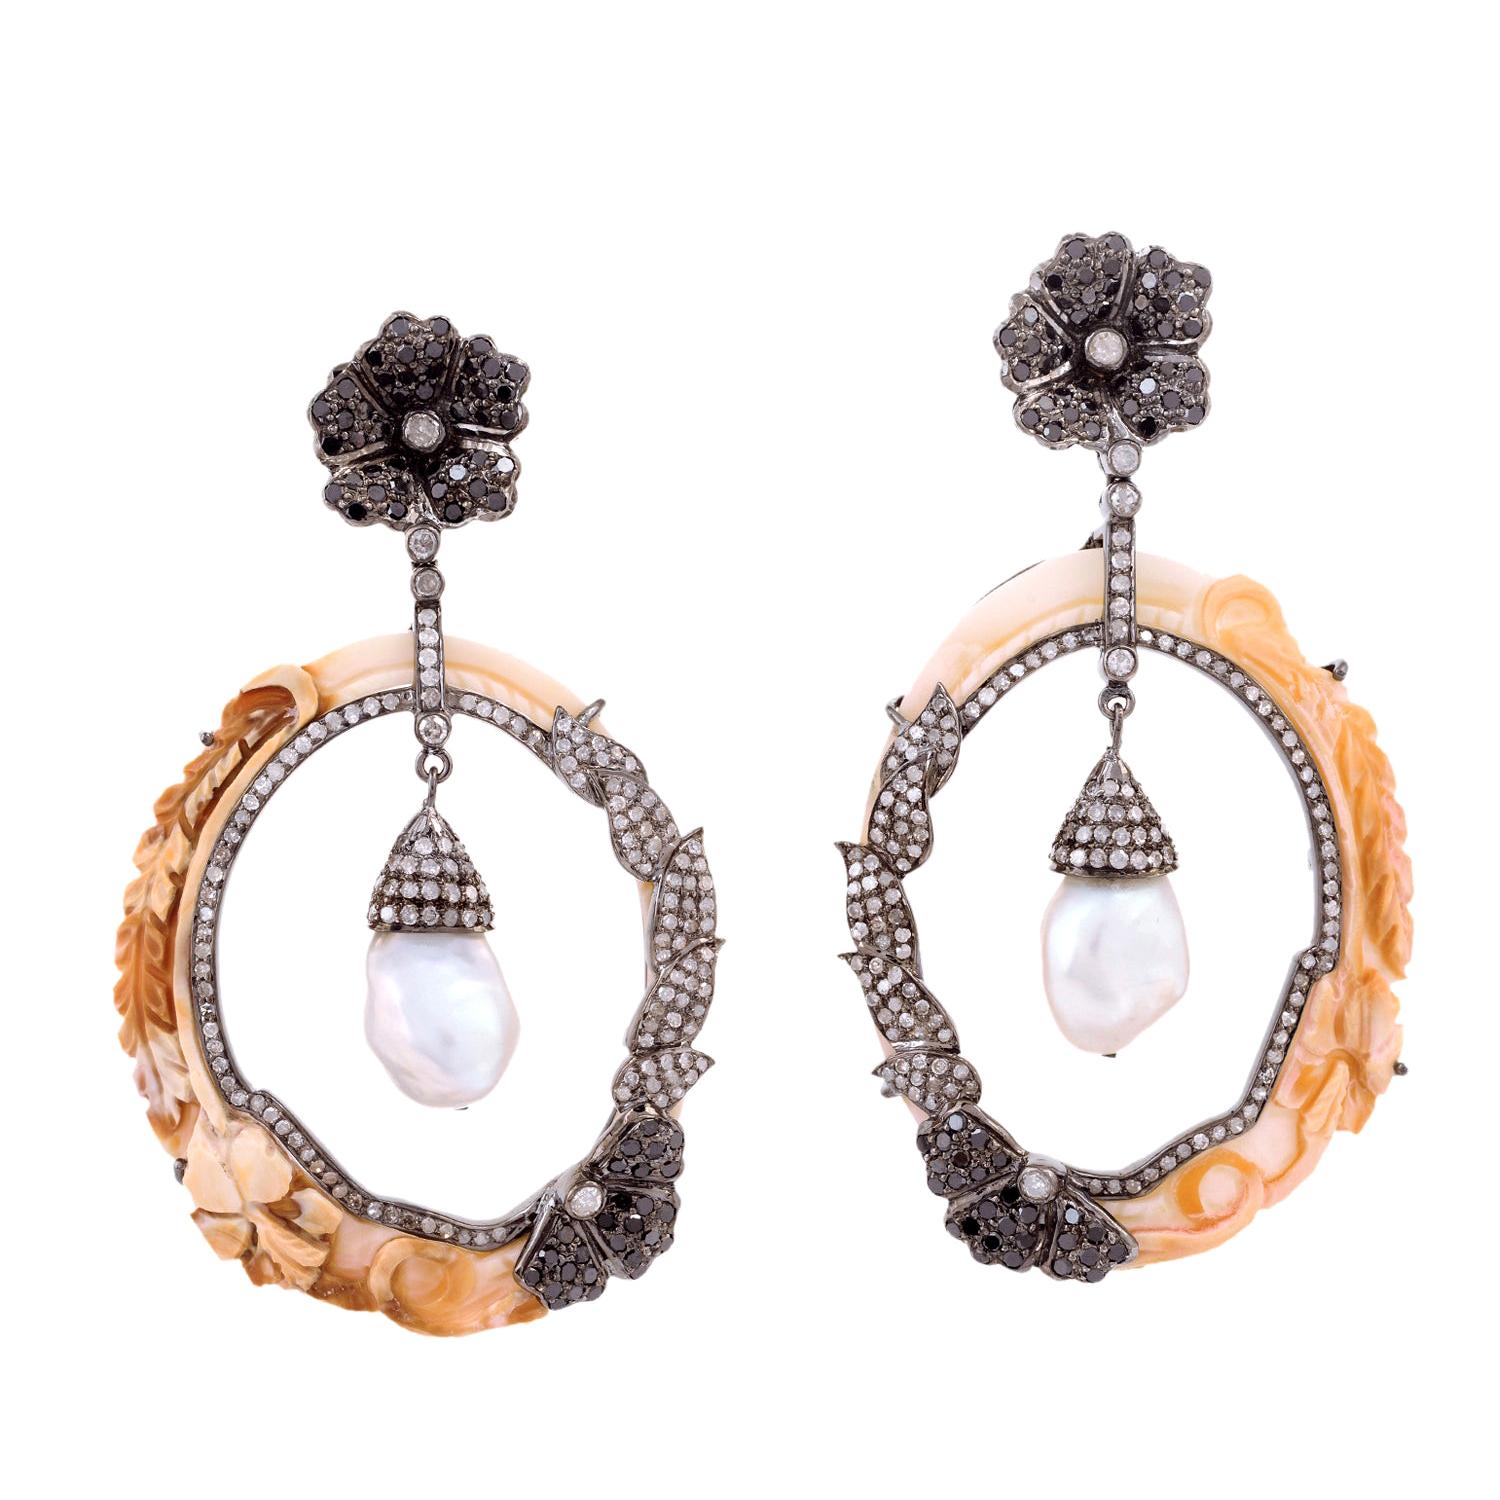 Boucles d'oreilles en or 18 carats avec perles en forme de coquillage sculptées à la main et diamants